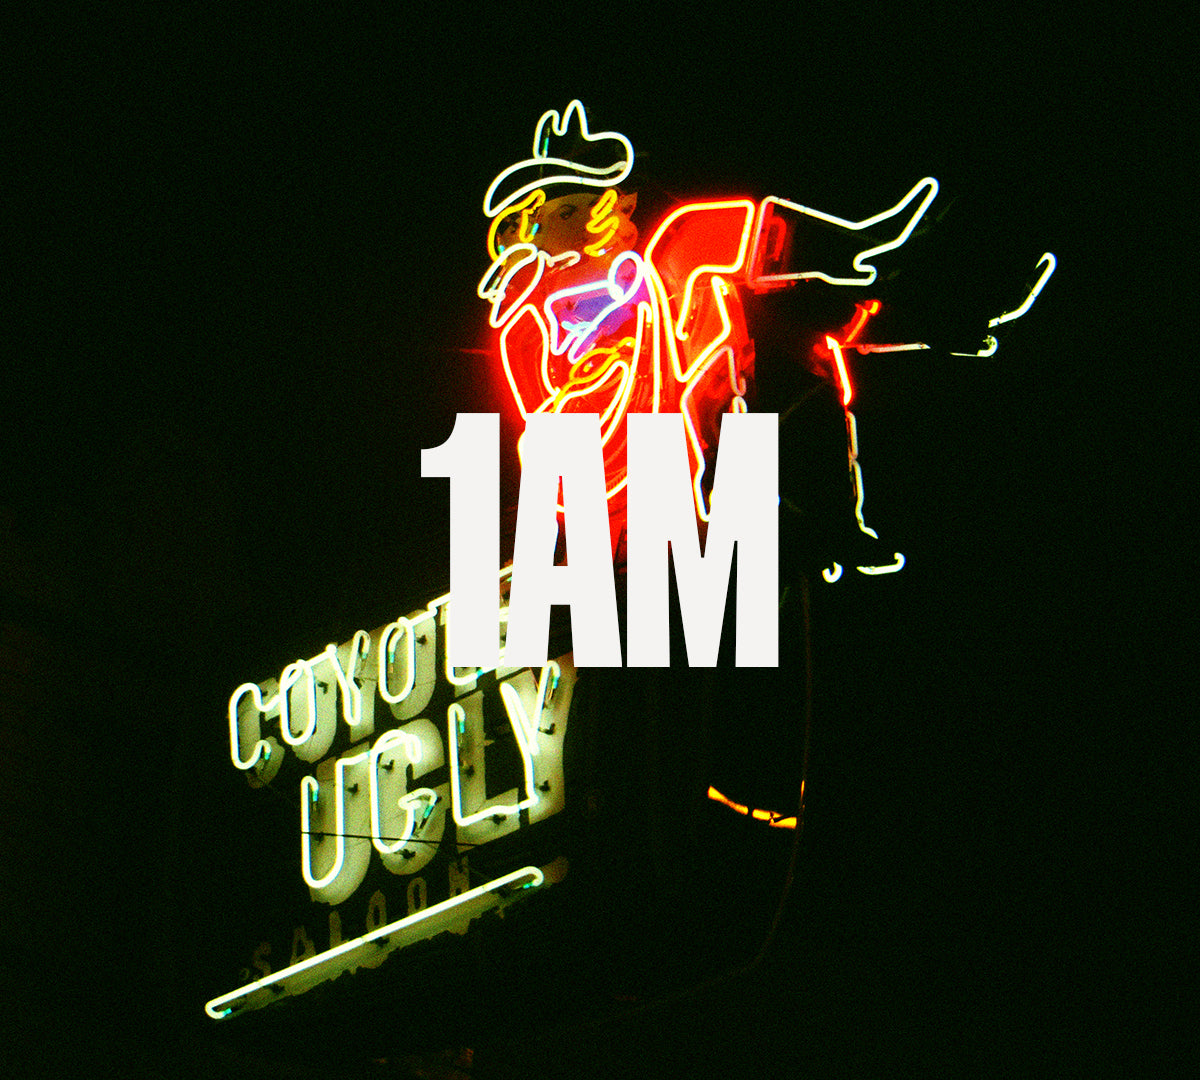 Cosmic Cowboy extrait de parfum by Perfumehead. Time 1 a.m.